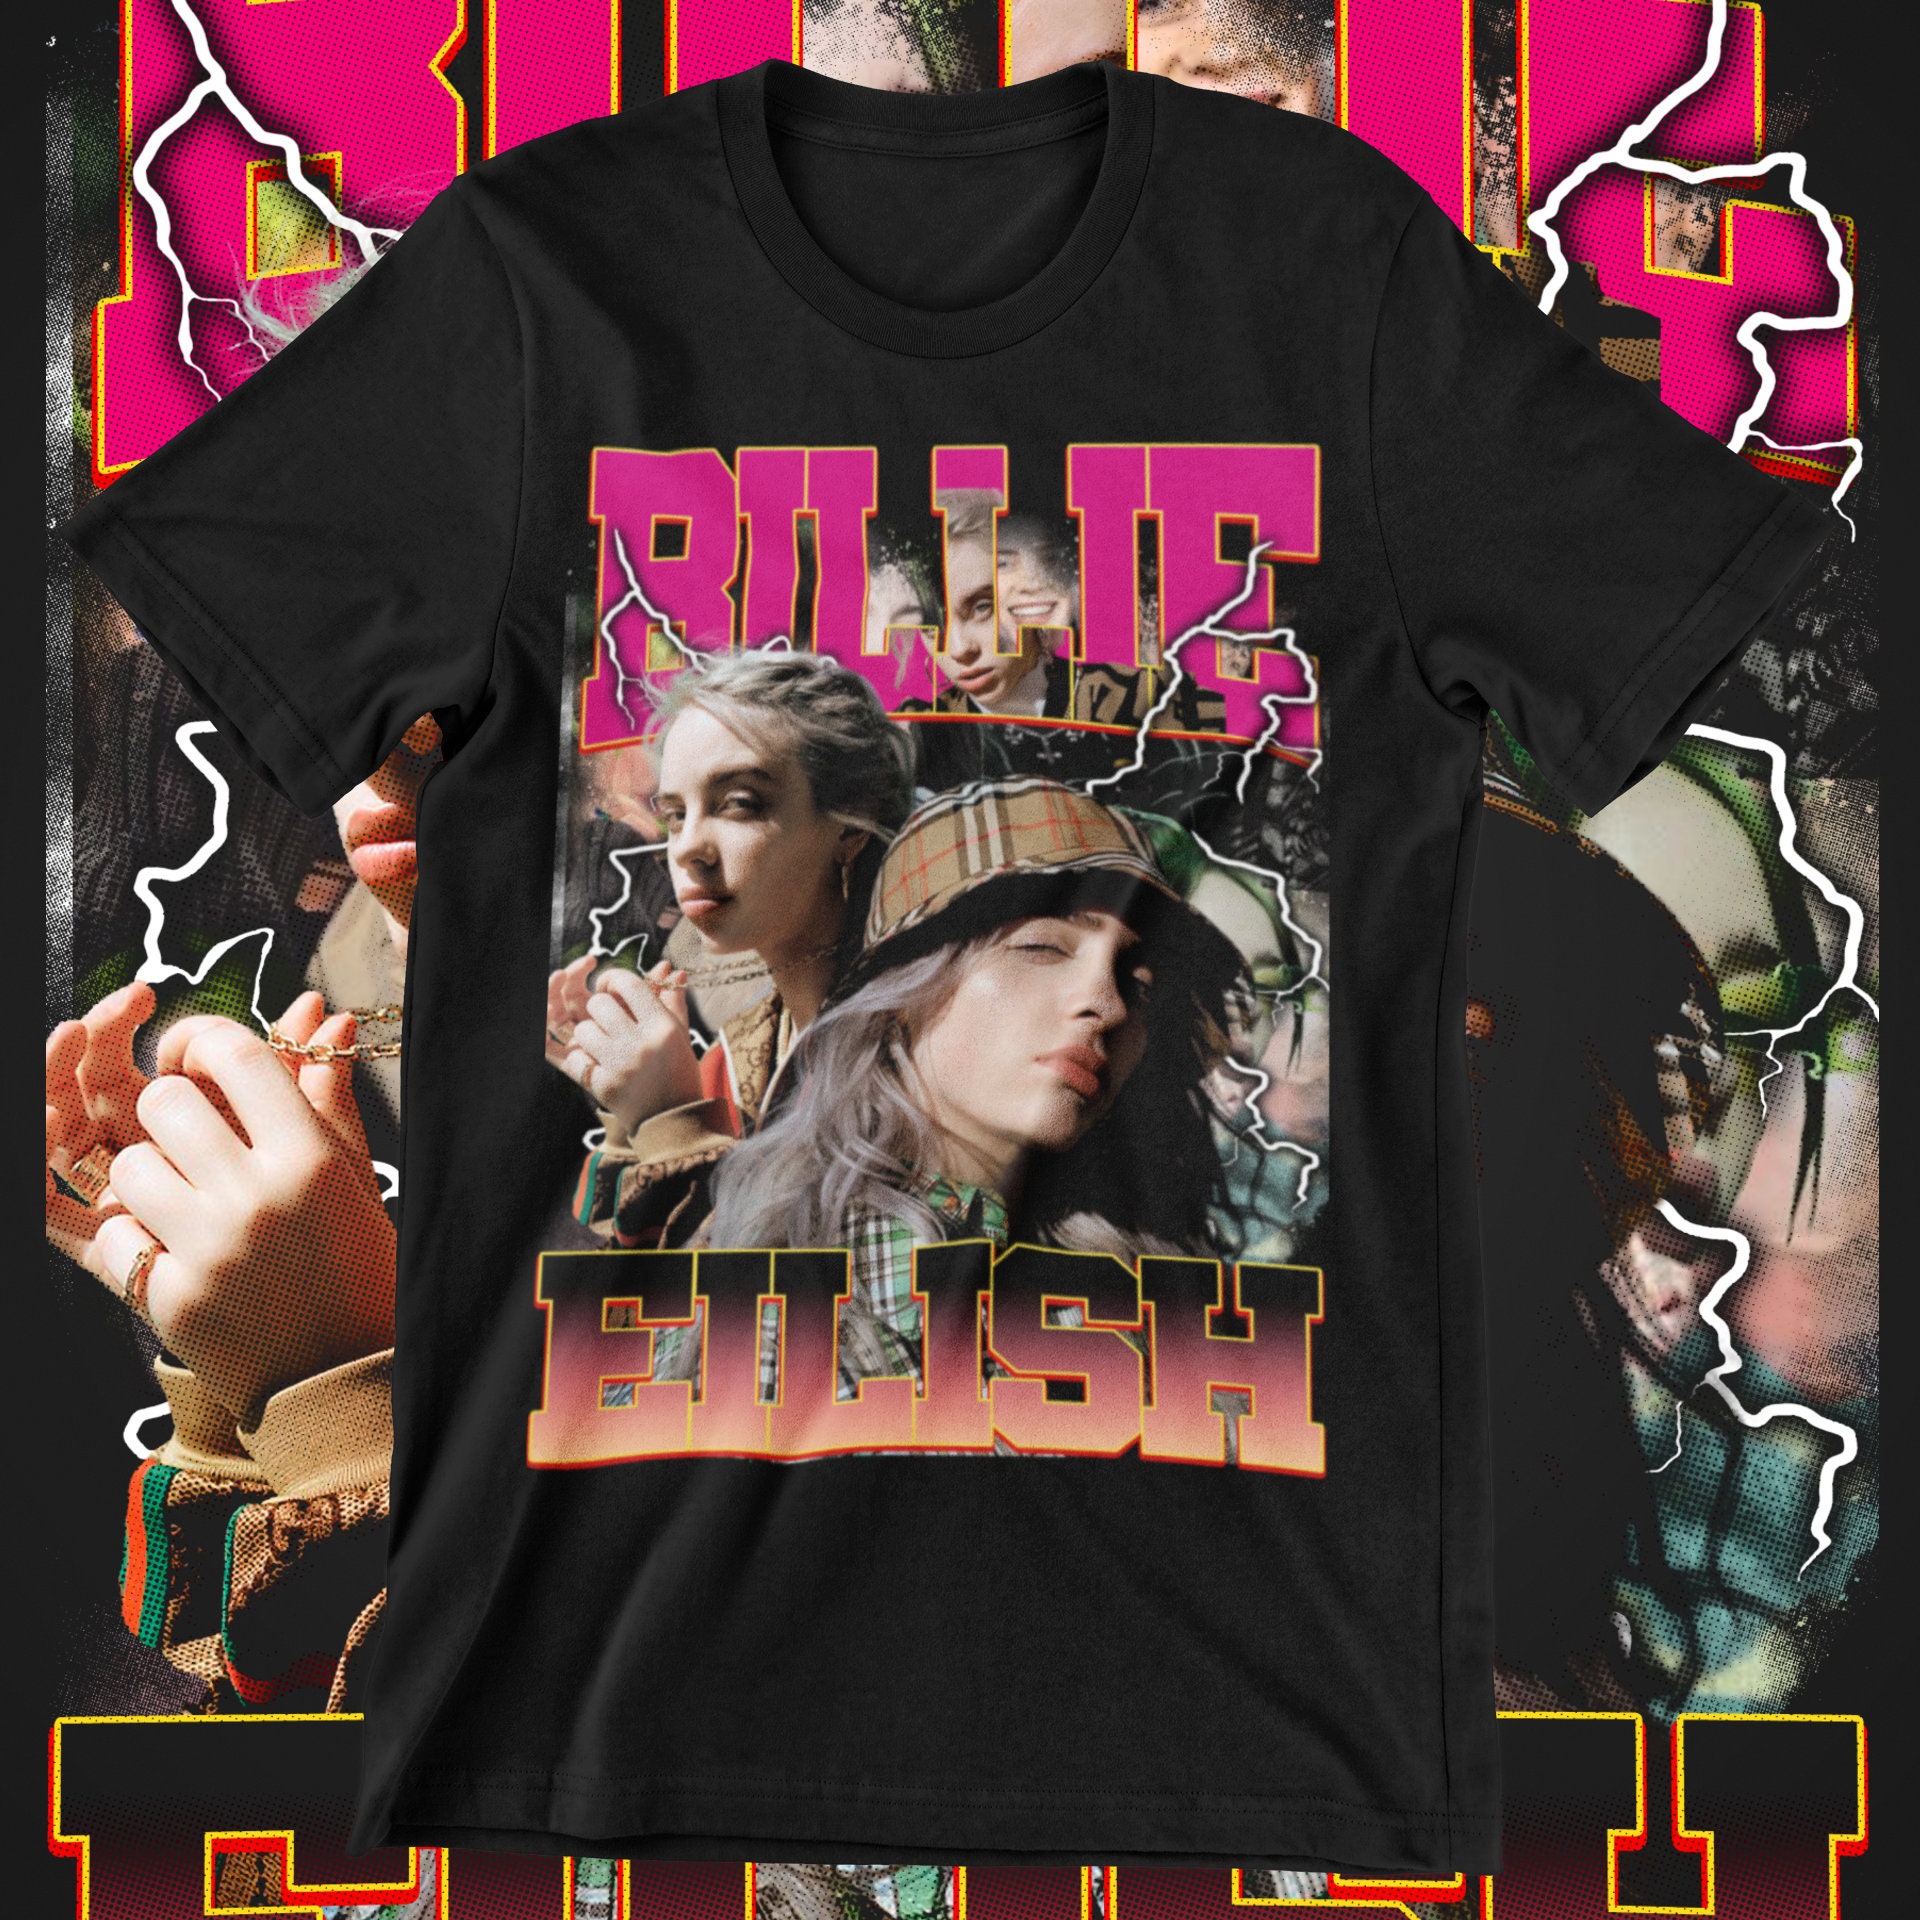 Billie Eilish T-Shirt, Bootleg concert T-Shirt, Rap Tee gift  T-Shirt, Vintage T-Shirt